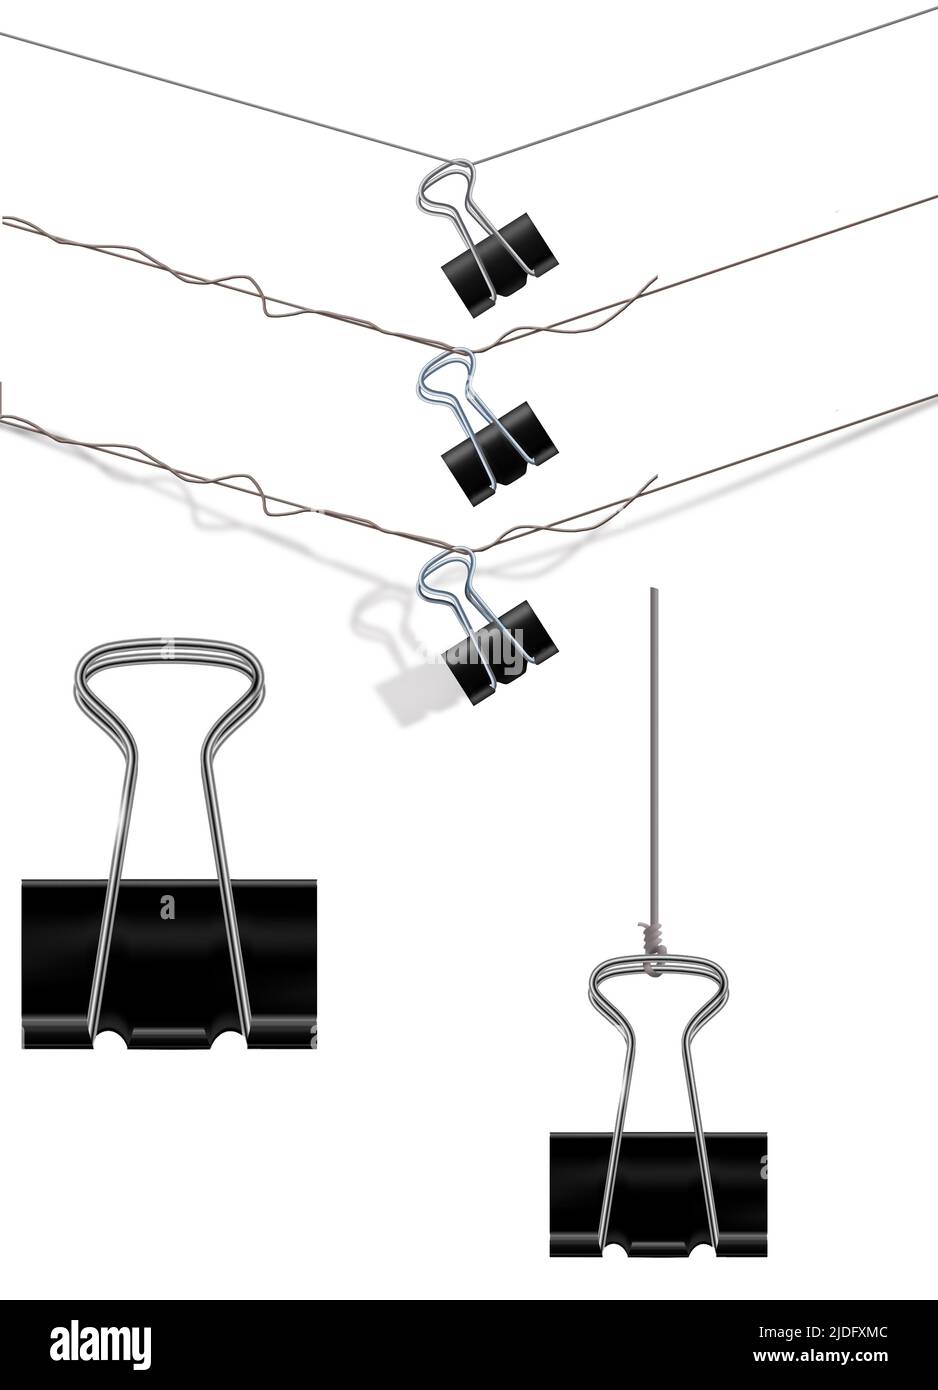 Las abrazaderas de papel se ven colgadas del alambre en estas ilustraciones de 3-d para ser utilizadas como recursos gráficos. Foto de stock